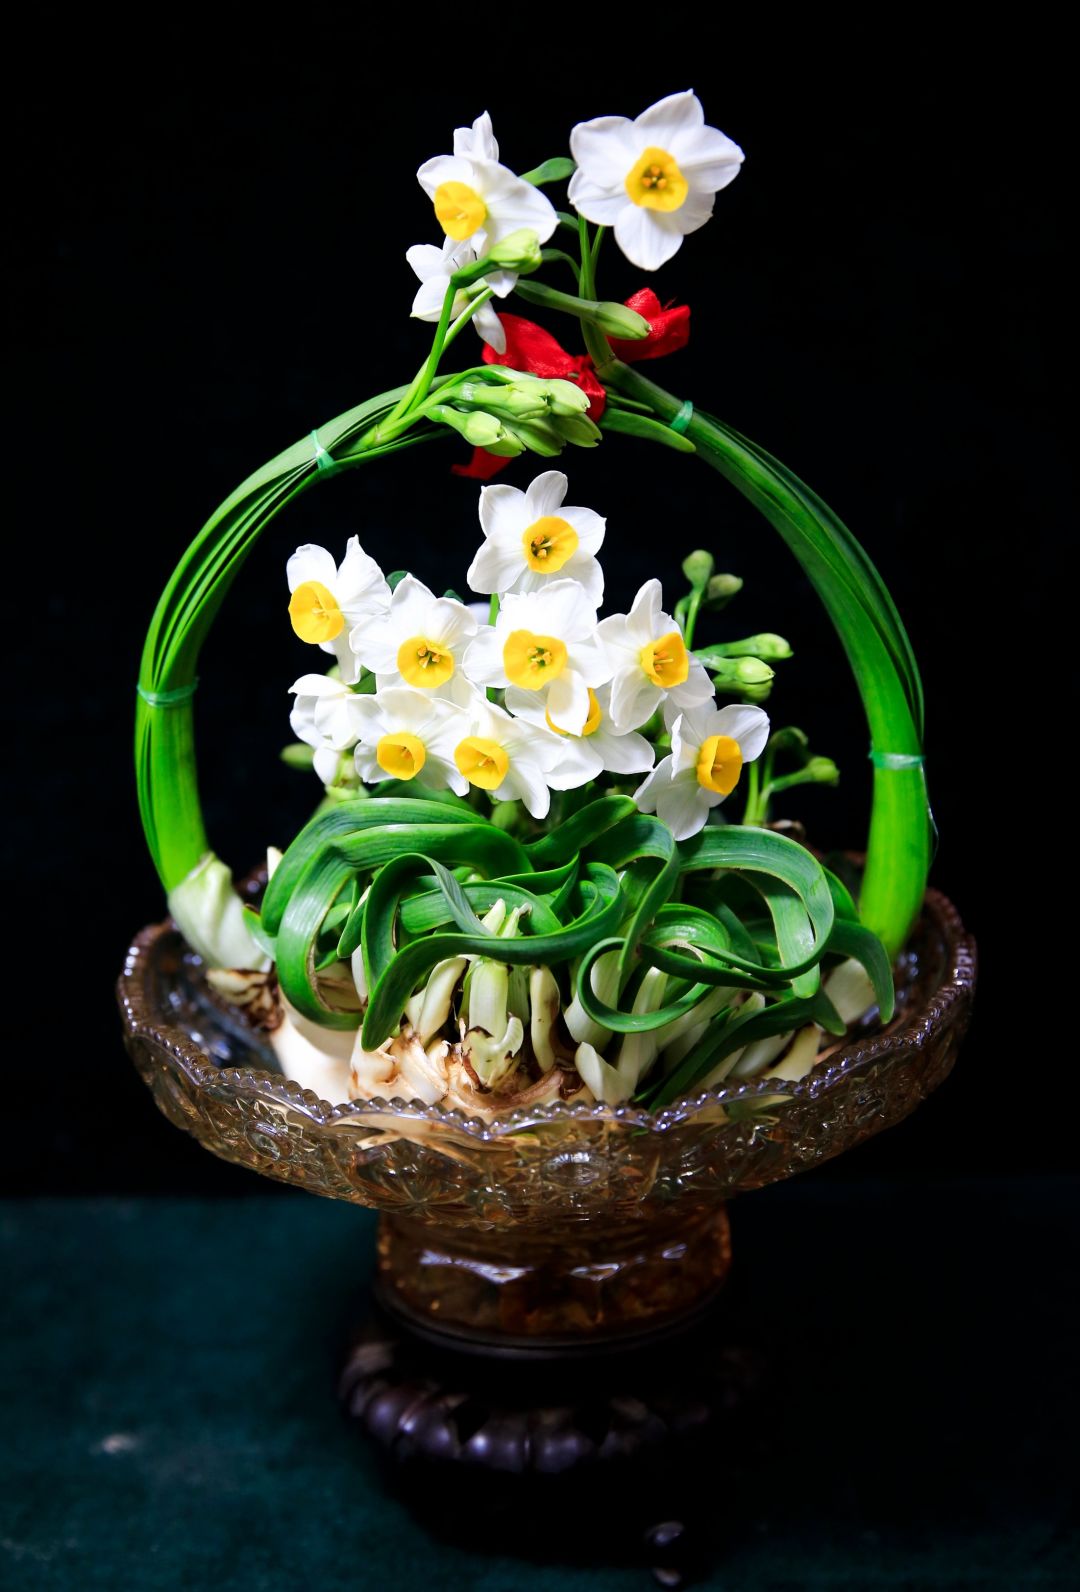 水仙雕刻造型花篮图片